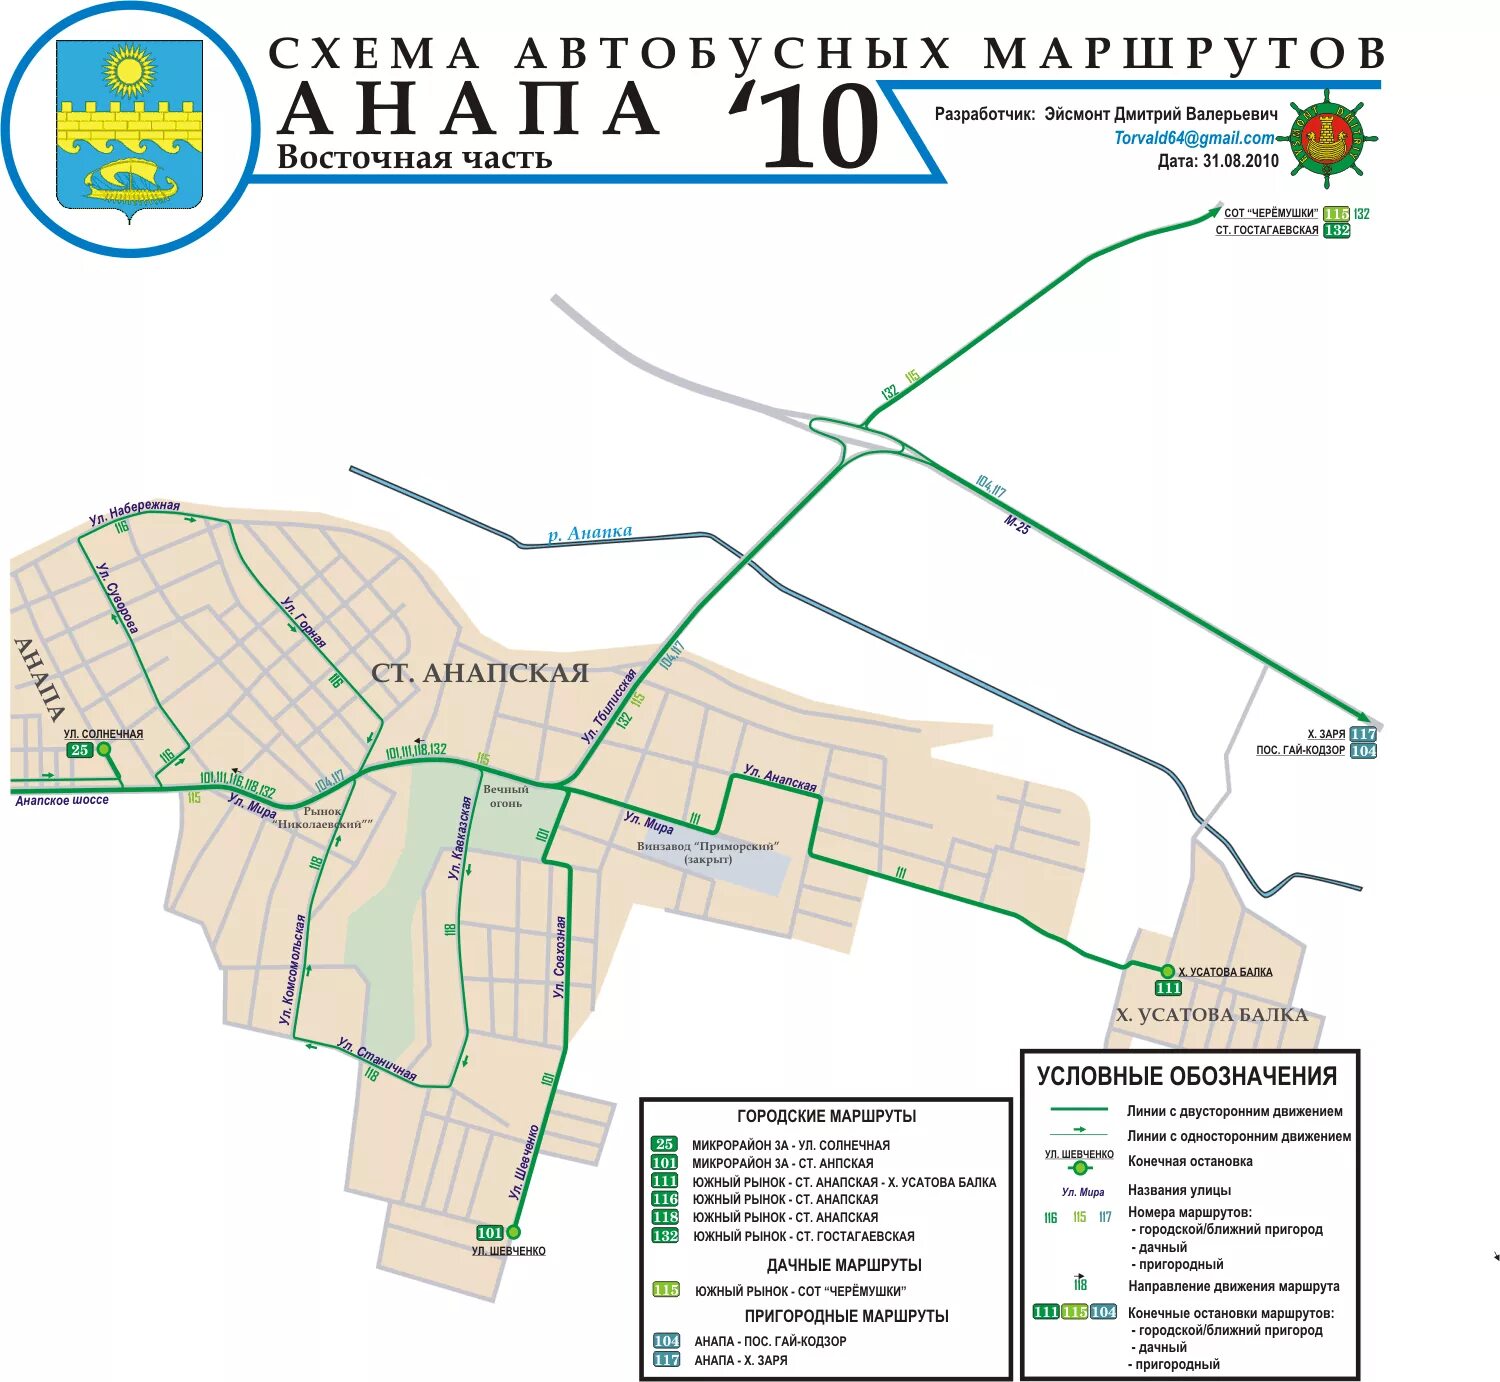 Карта 114 автобуса